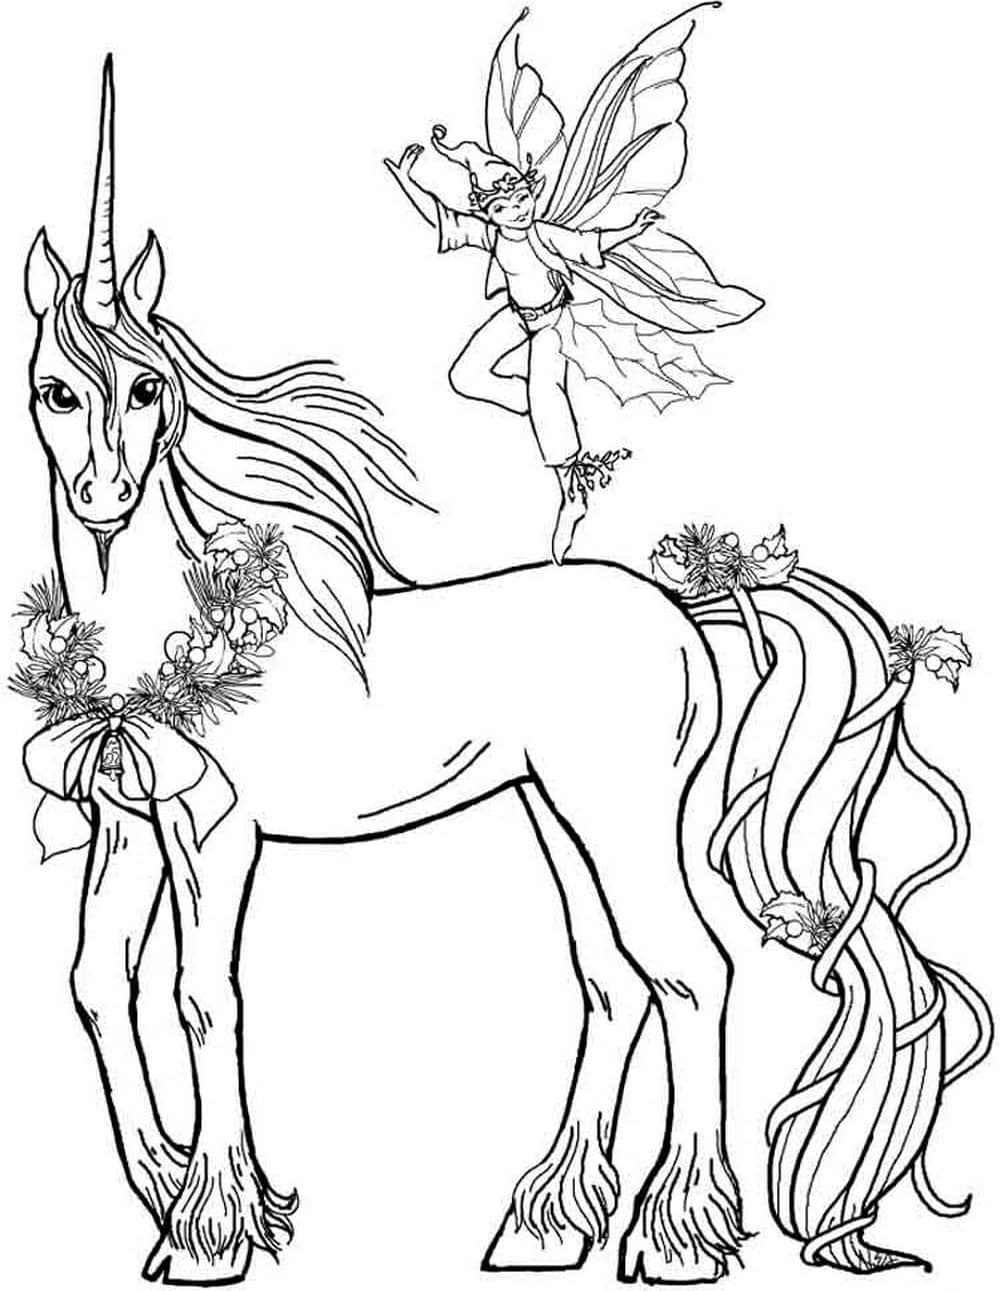 Dibujos de Hada Y Unicornio para colorear